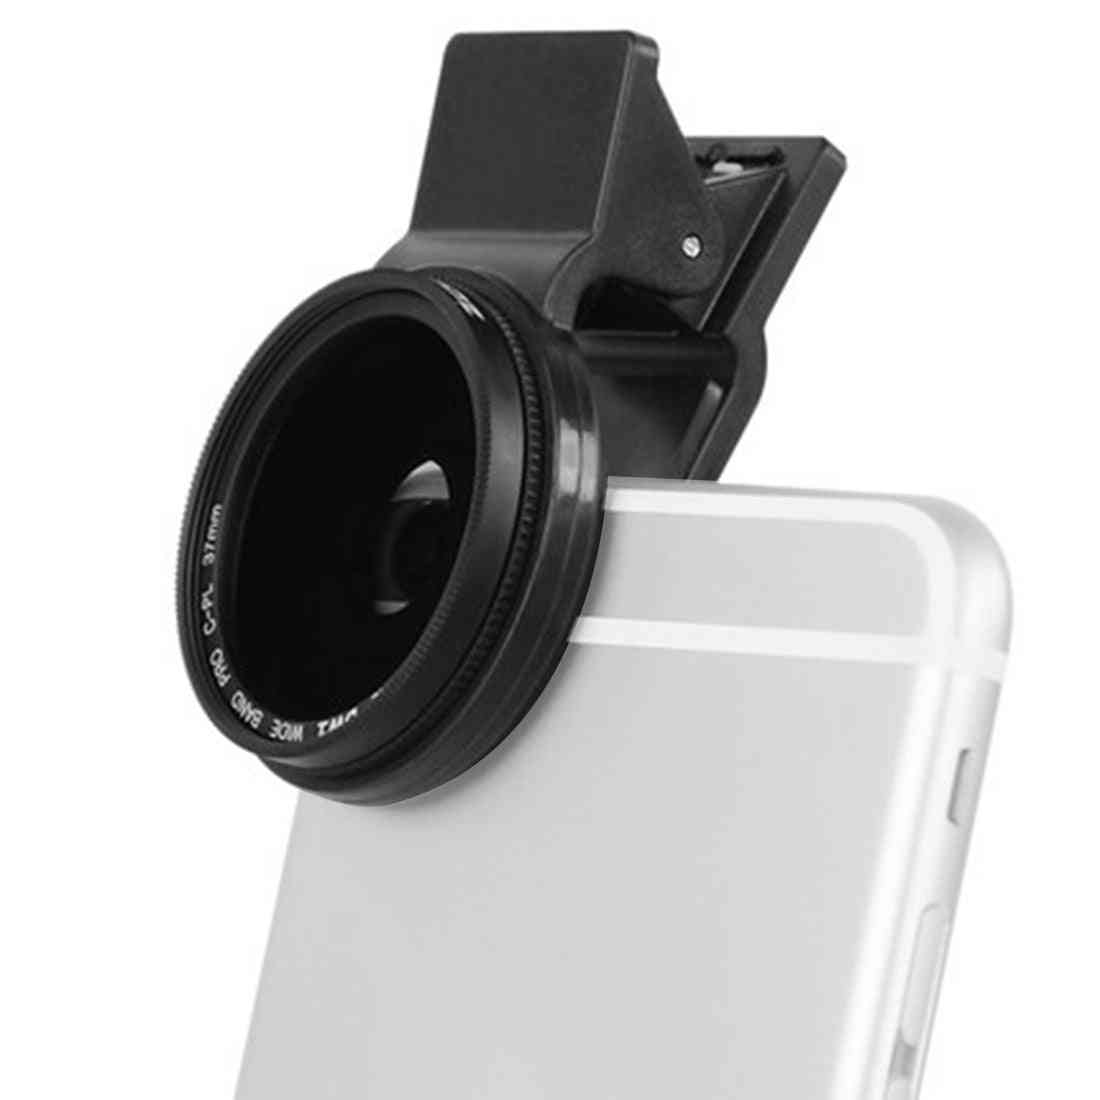 Obiettivo cpl polarizzatore circolare fotocamera professionale da 37 mm per iphone 7 6s plus samsung galaxy huawei htc windows android (37mm)